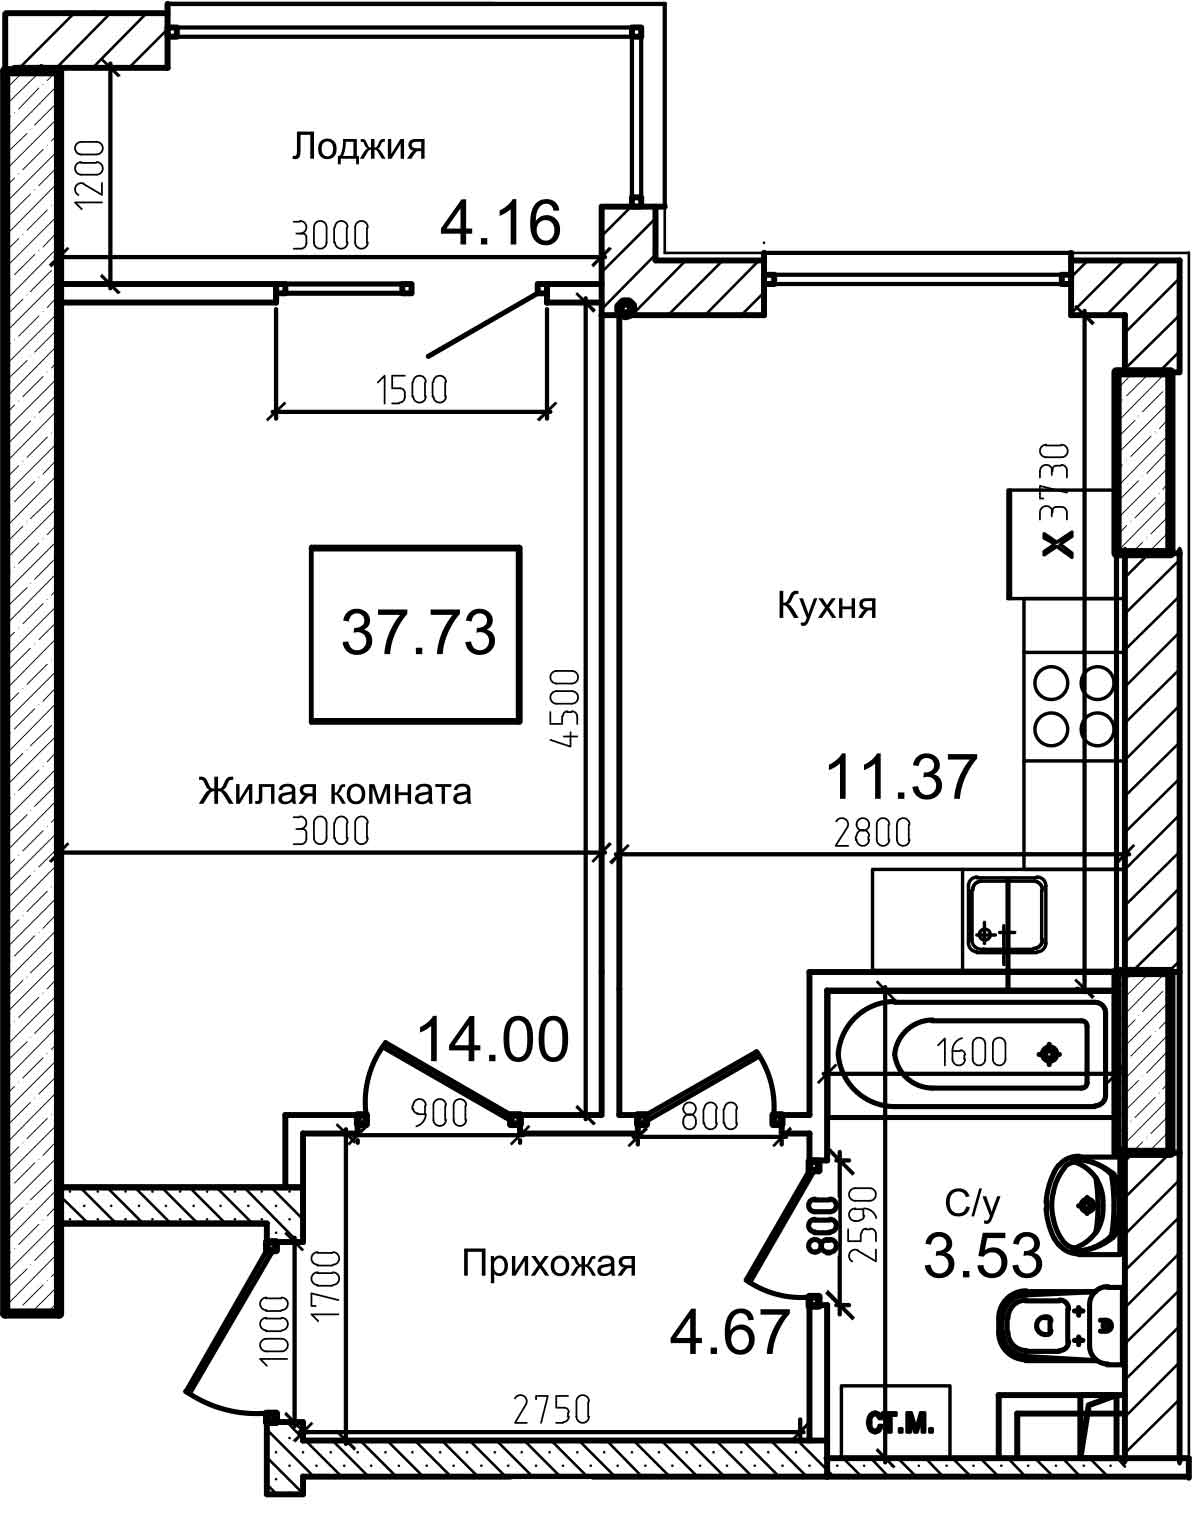 Планування 1-к квартира площею 37.5м2, AB-08-02/00011.